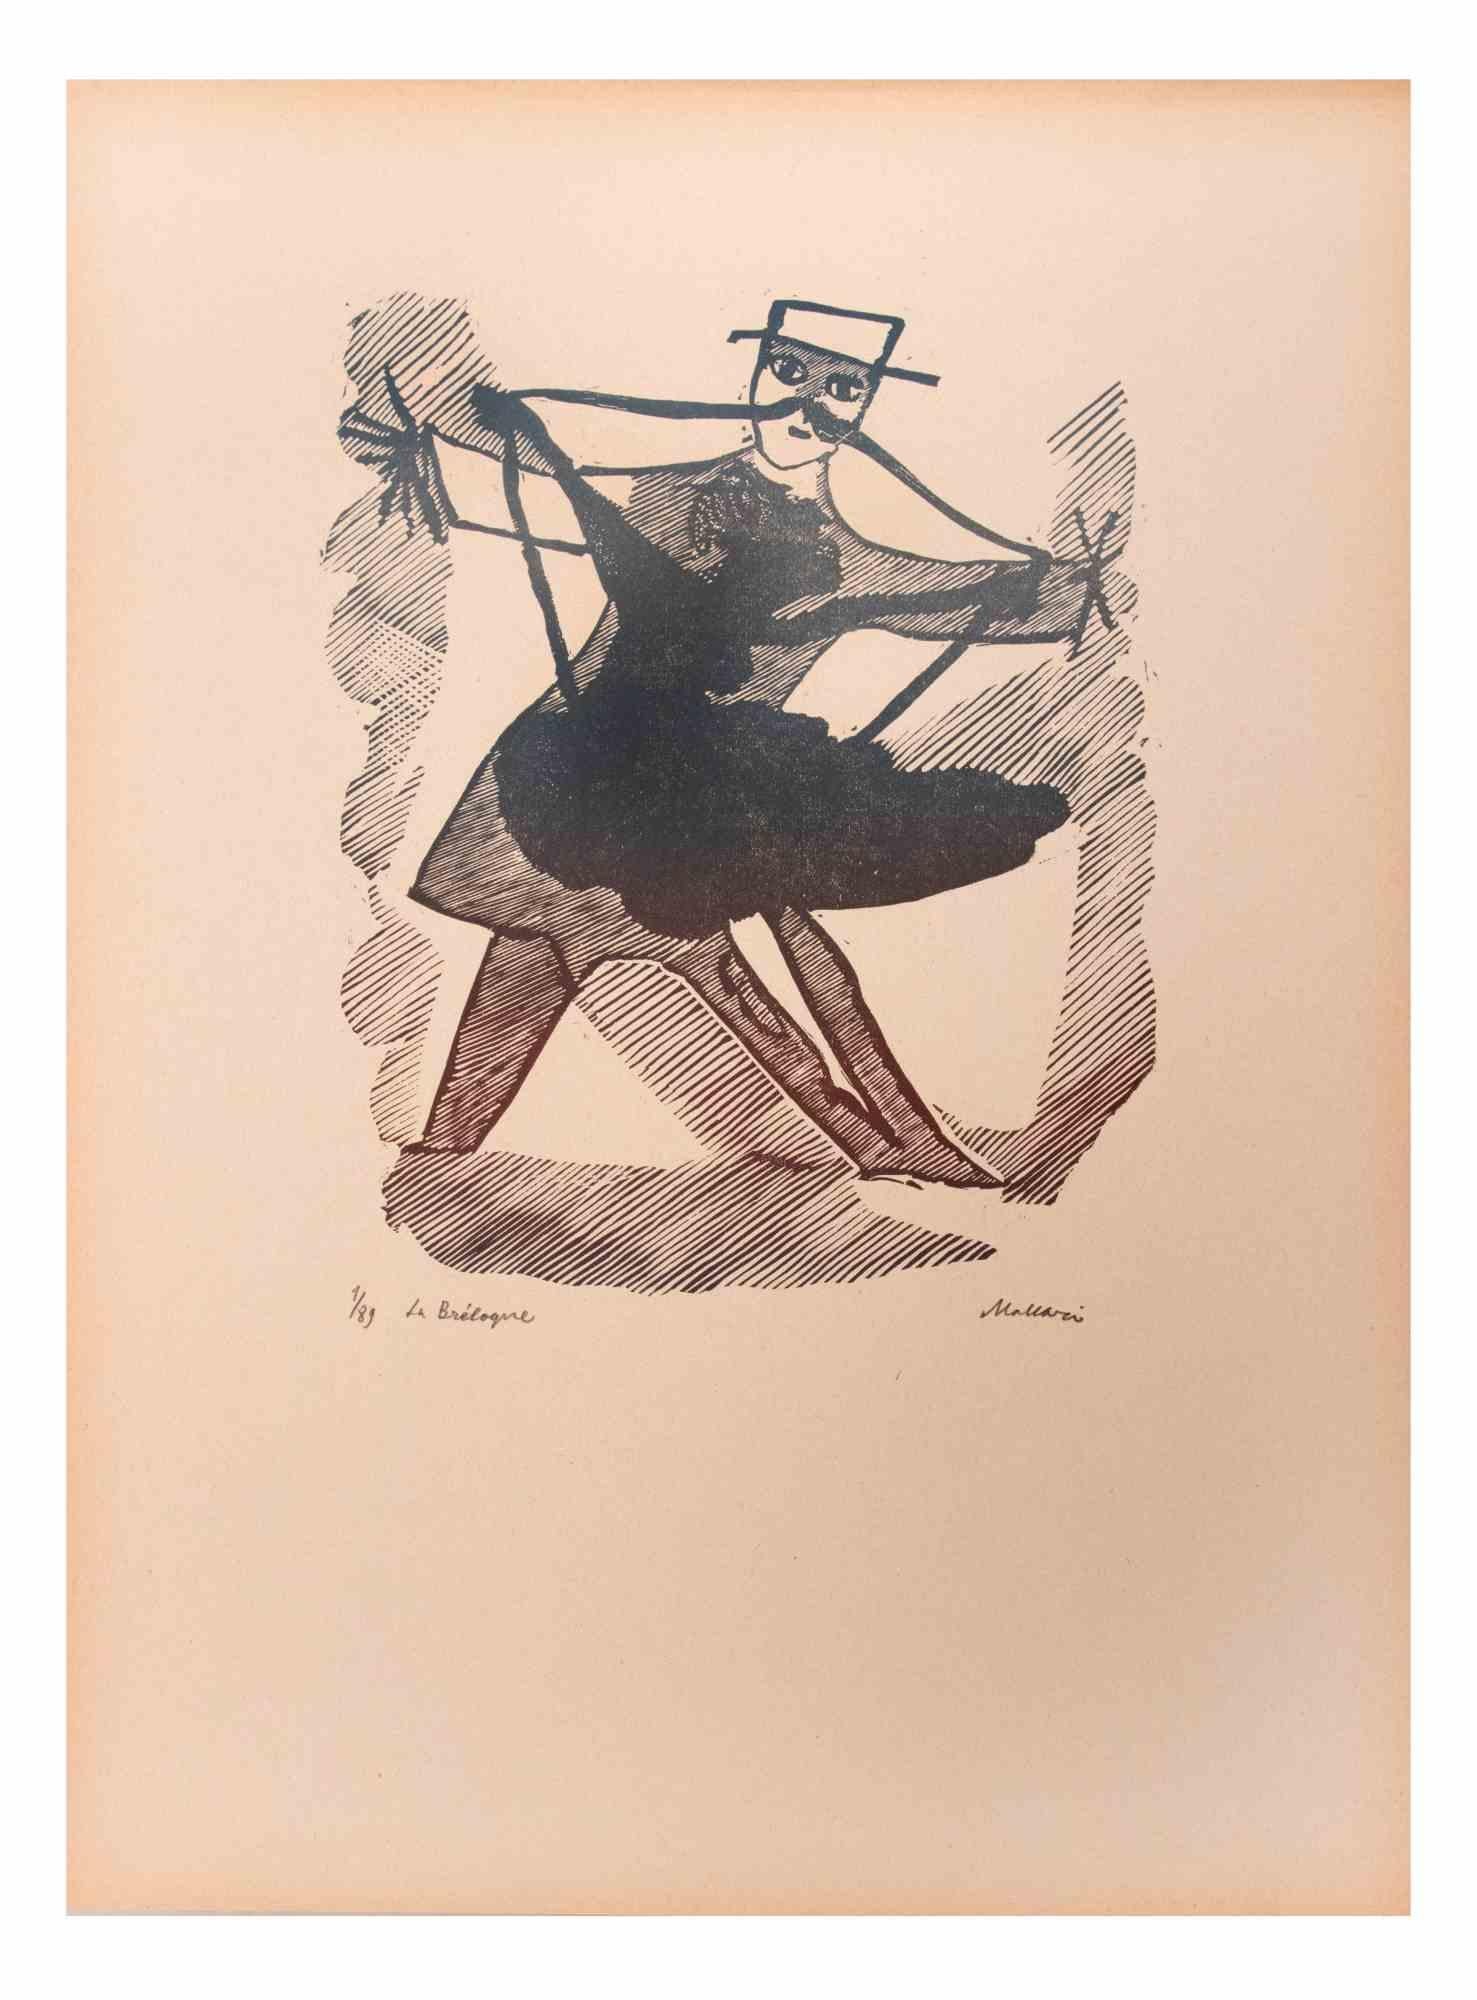 La Breloque ist ein Kunstwerk von Mino Maccari (1924-1989) aus der Mitte des 20. Jahrhunderts.

Holzschnitt auf Papier. Handsigniert in der rechten unteren Ecke. Nummeriert 1/89 Exemplare und betitelt am linken Rand.

Gute Bedingungen.

Mino Maccari